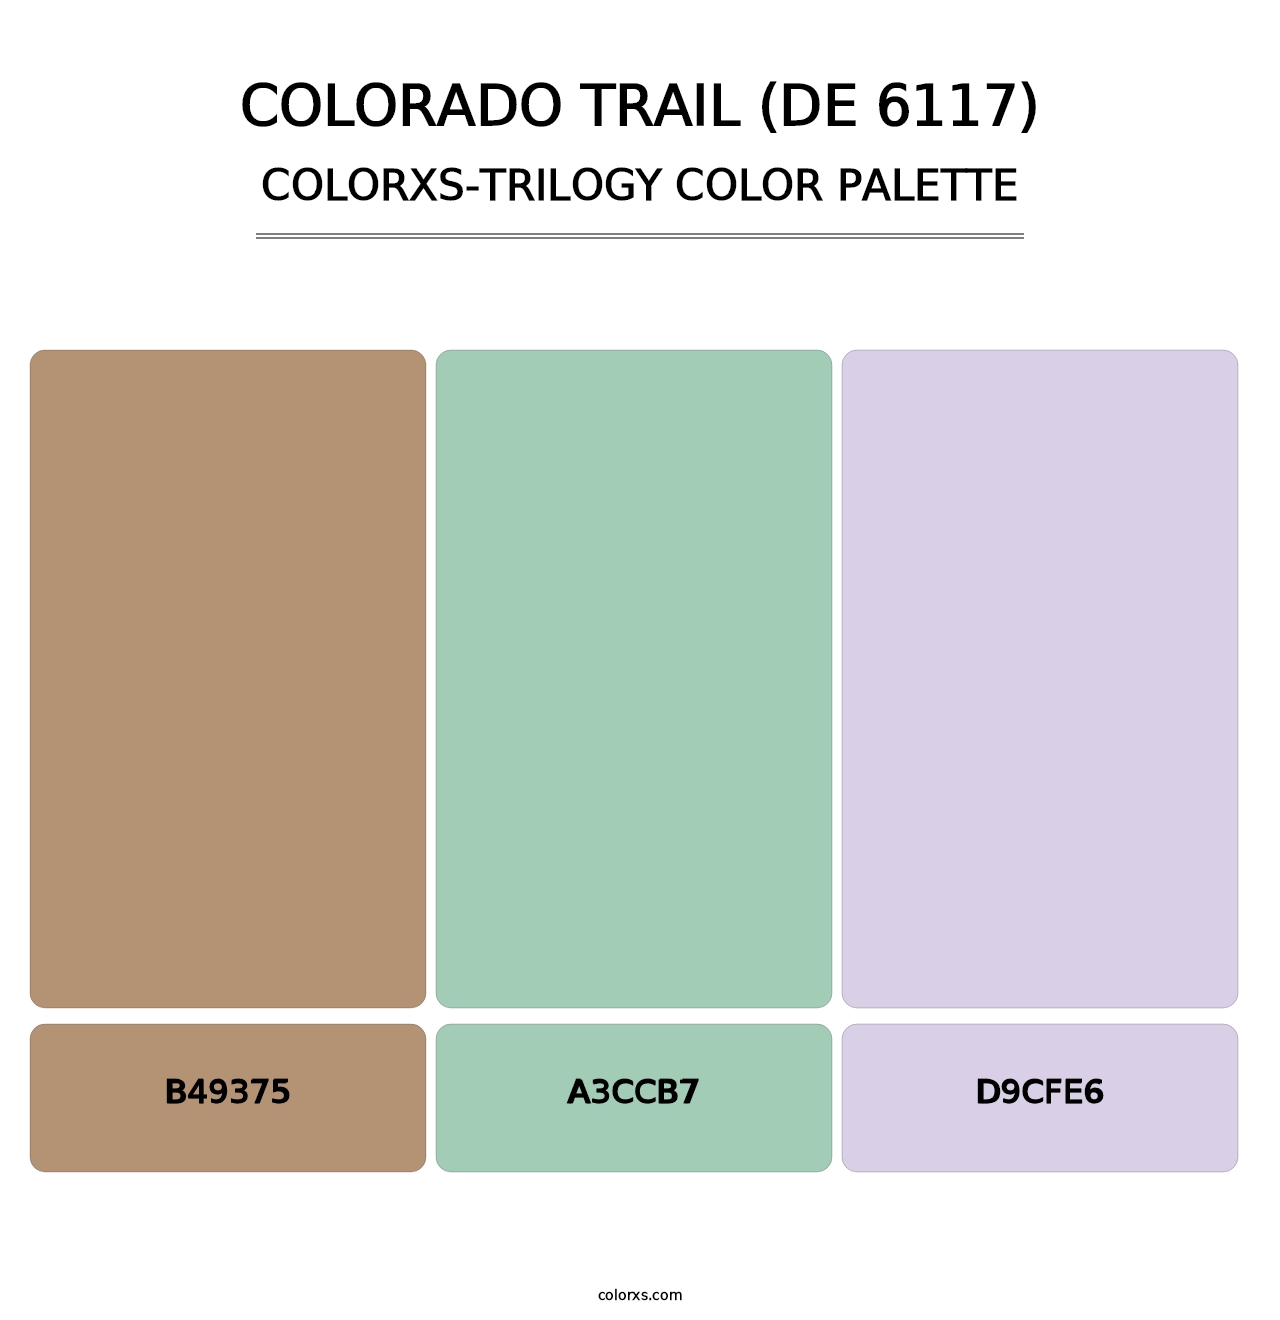 Colorado Trail (DE 6117) - Colorxs Trilogy Palette